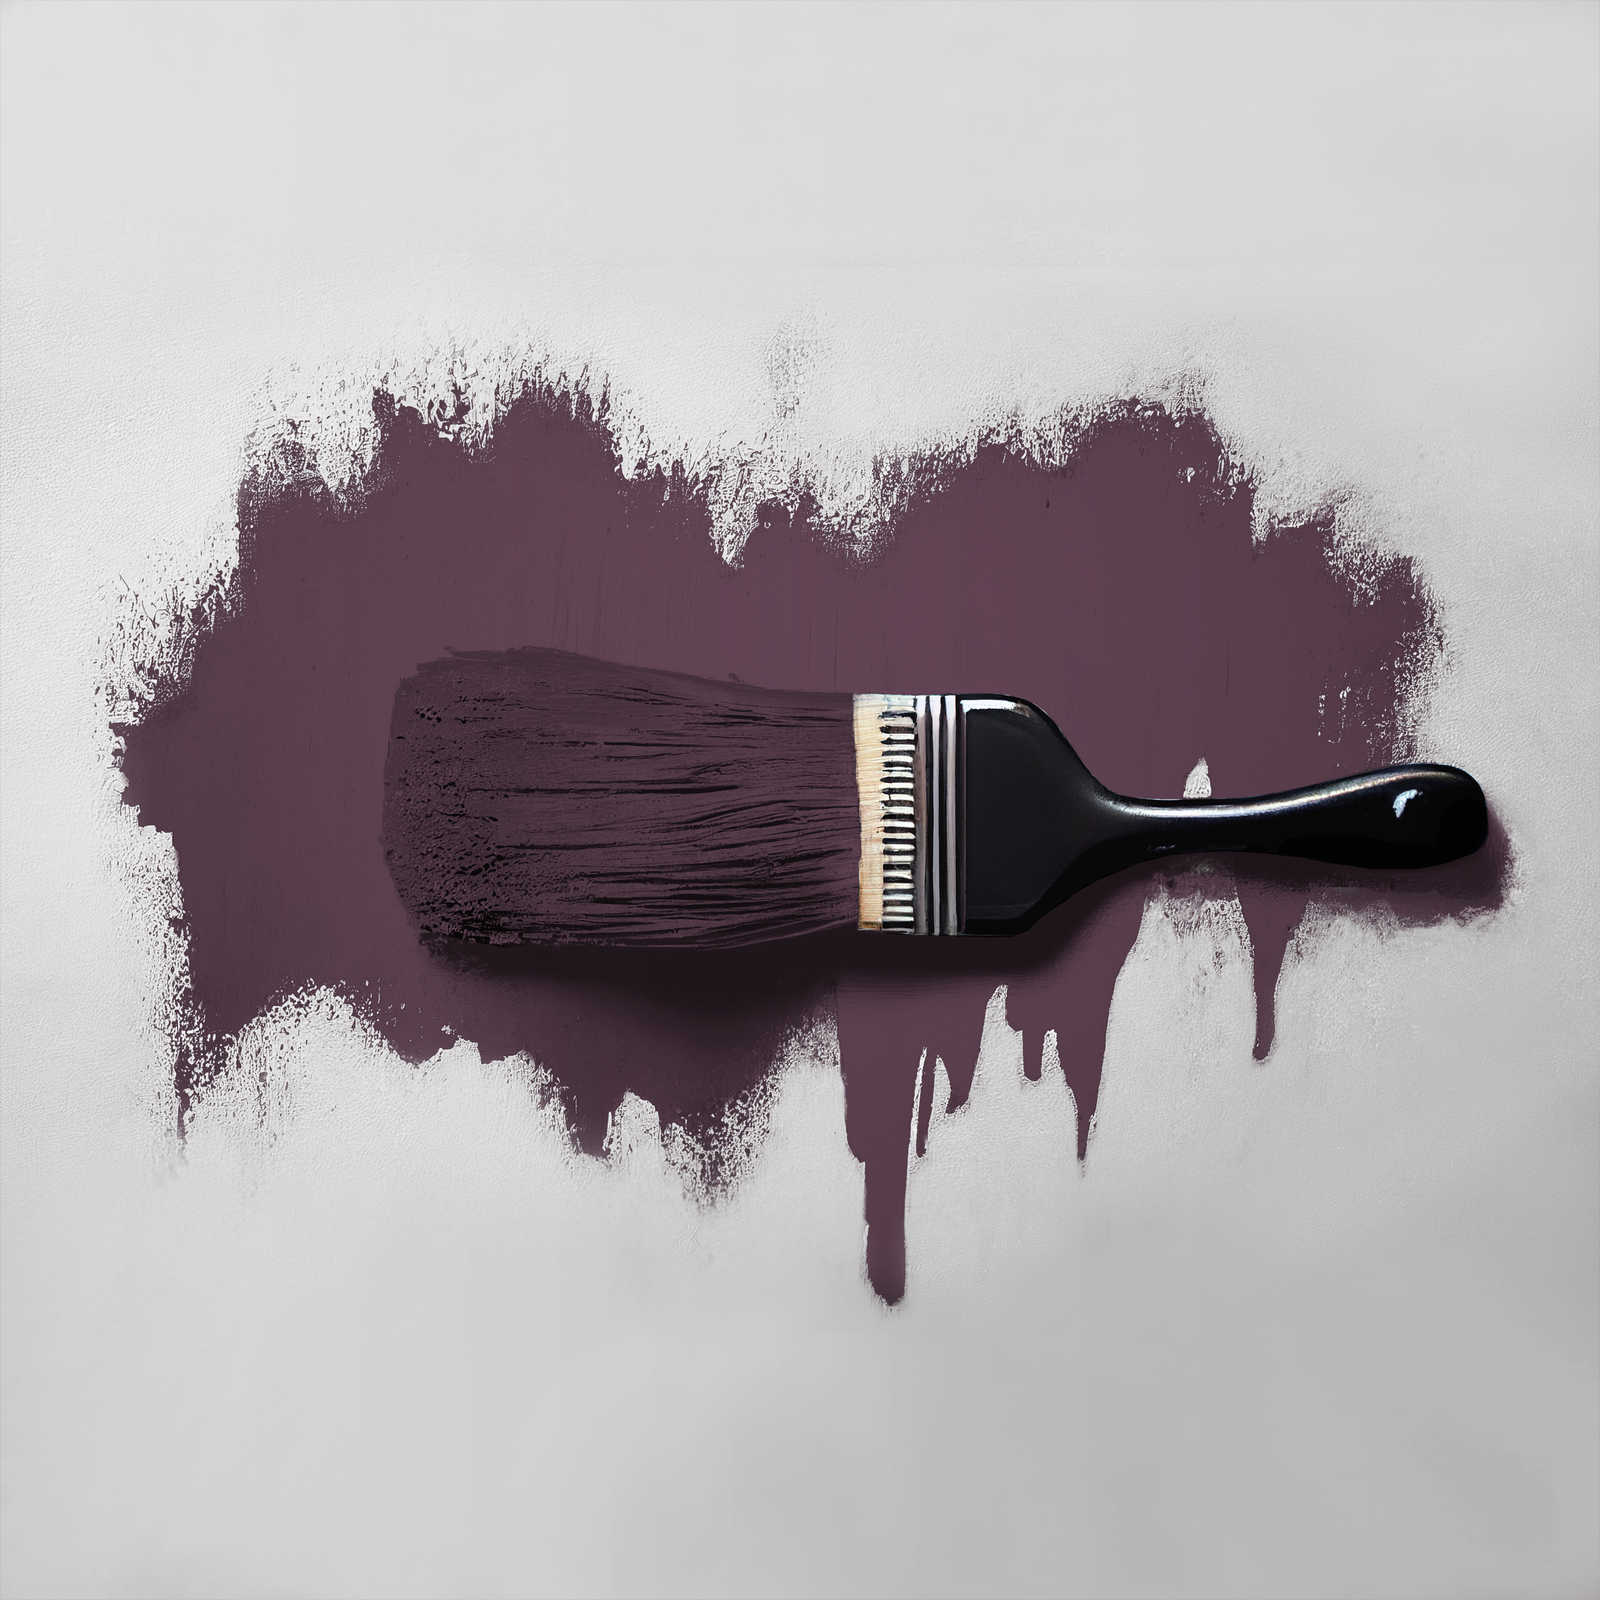             Peinture murale TCK2007 »Beady Beetroot« dans un interlude de violet et de rouge – 2,5 litres
        